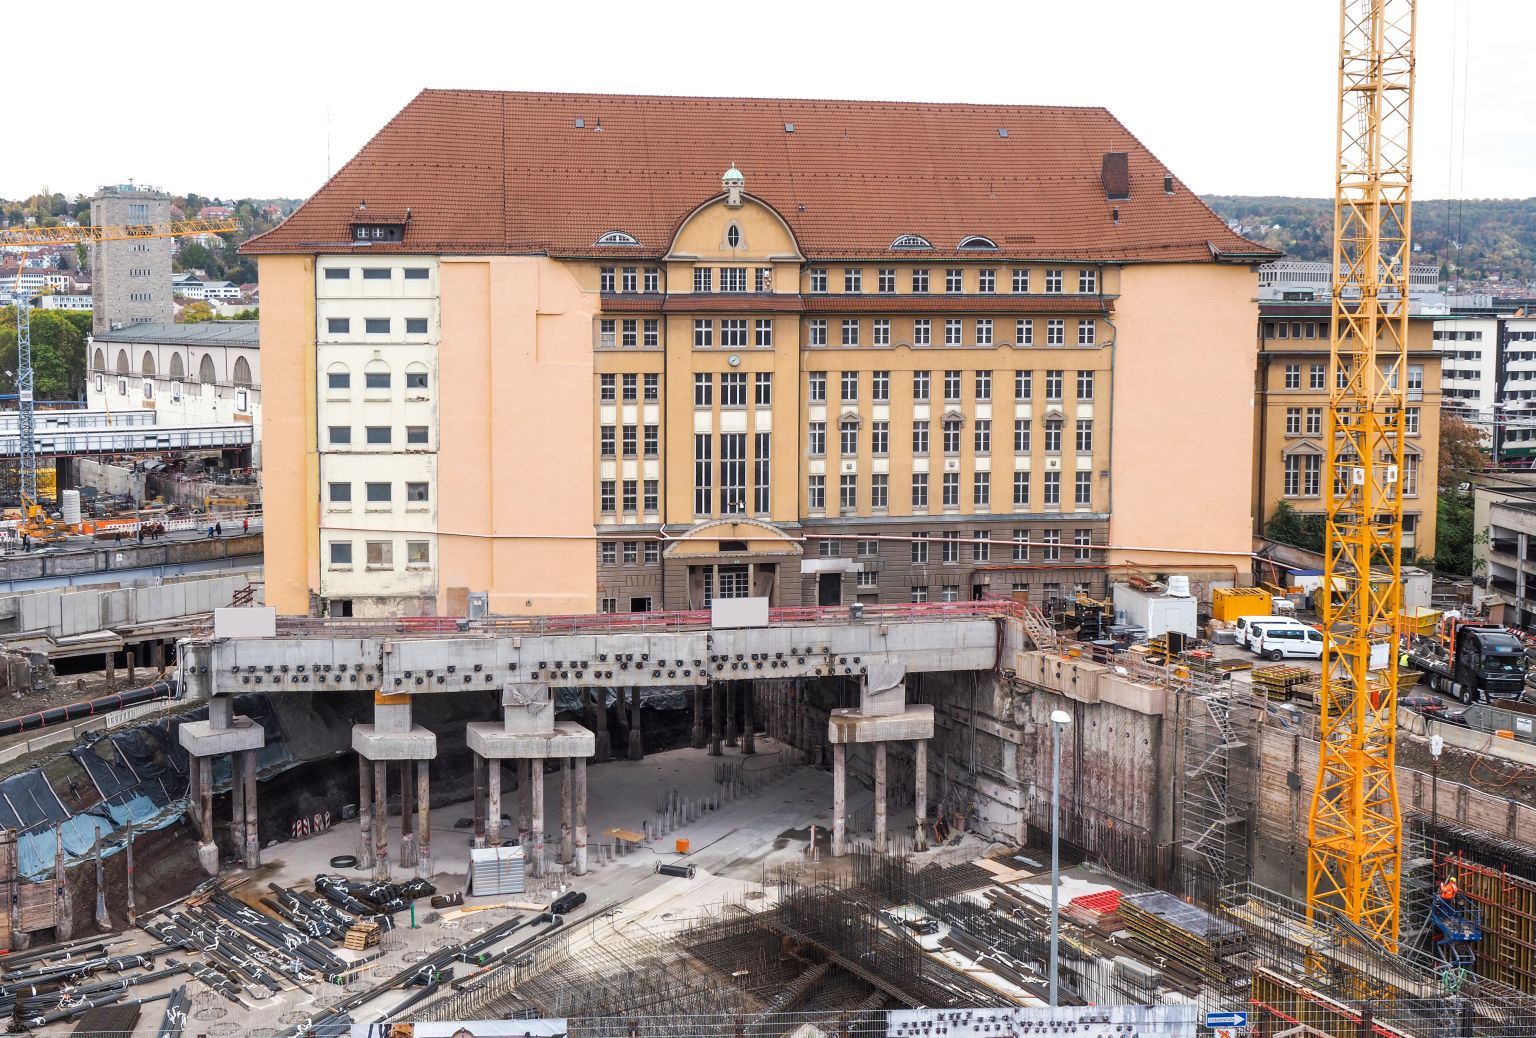 "Stuttgart 21" noch mal fast 2 Mrd. Euro teurer - Bahn-Kreise